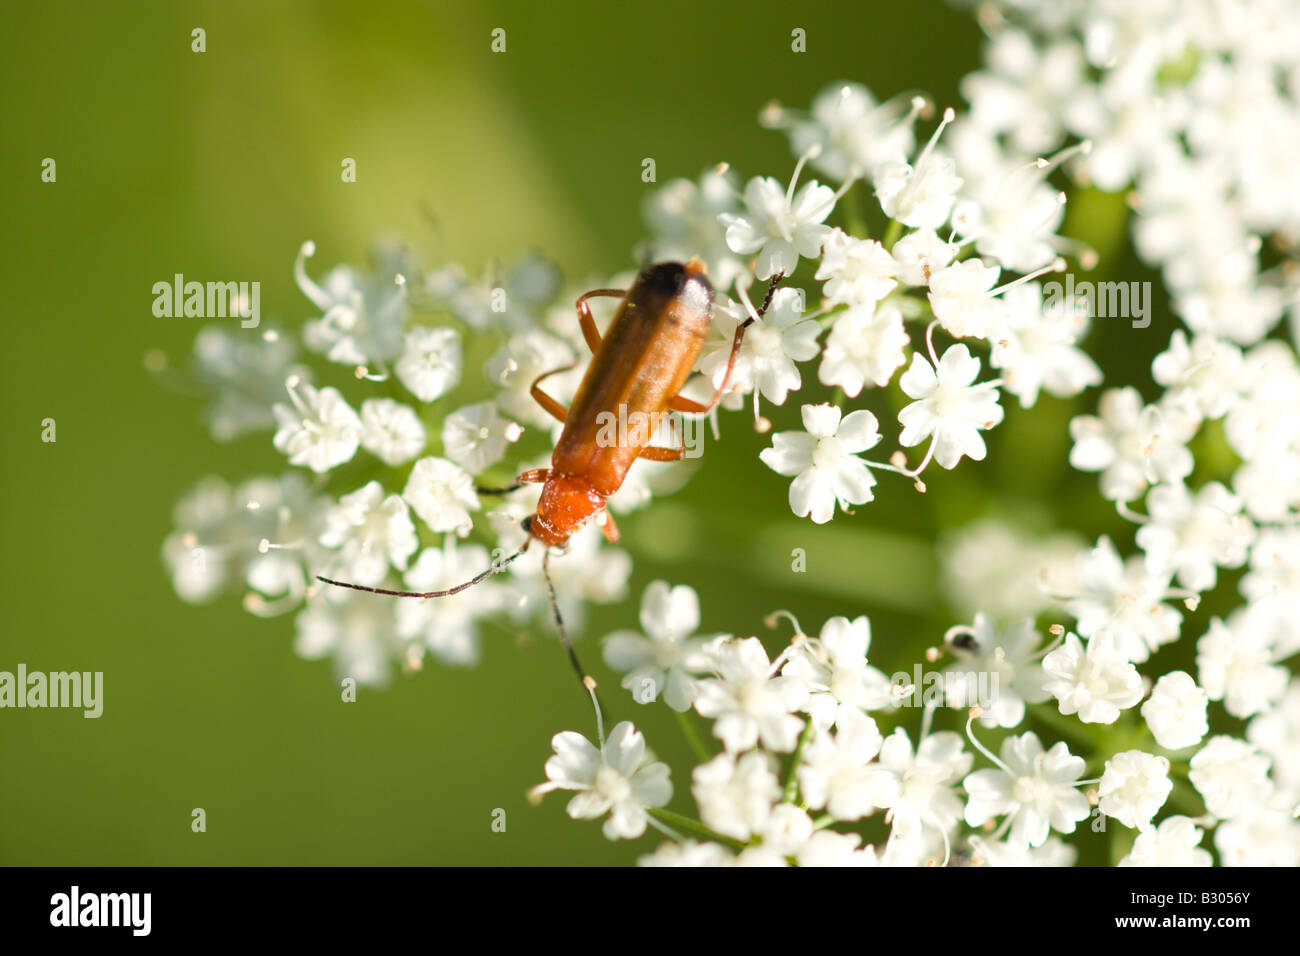 Soldato Beetle, Rhagonycha fulva, comune di insetti nel Regno Unito Foto Stock